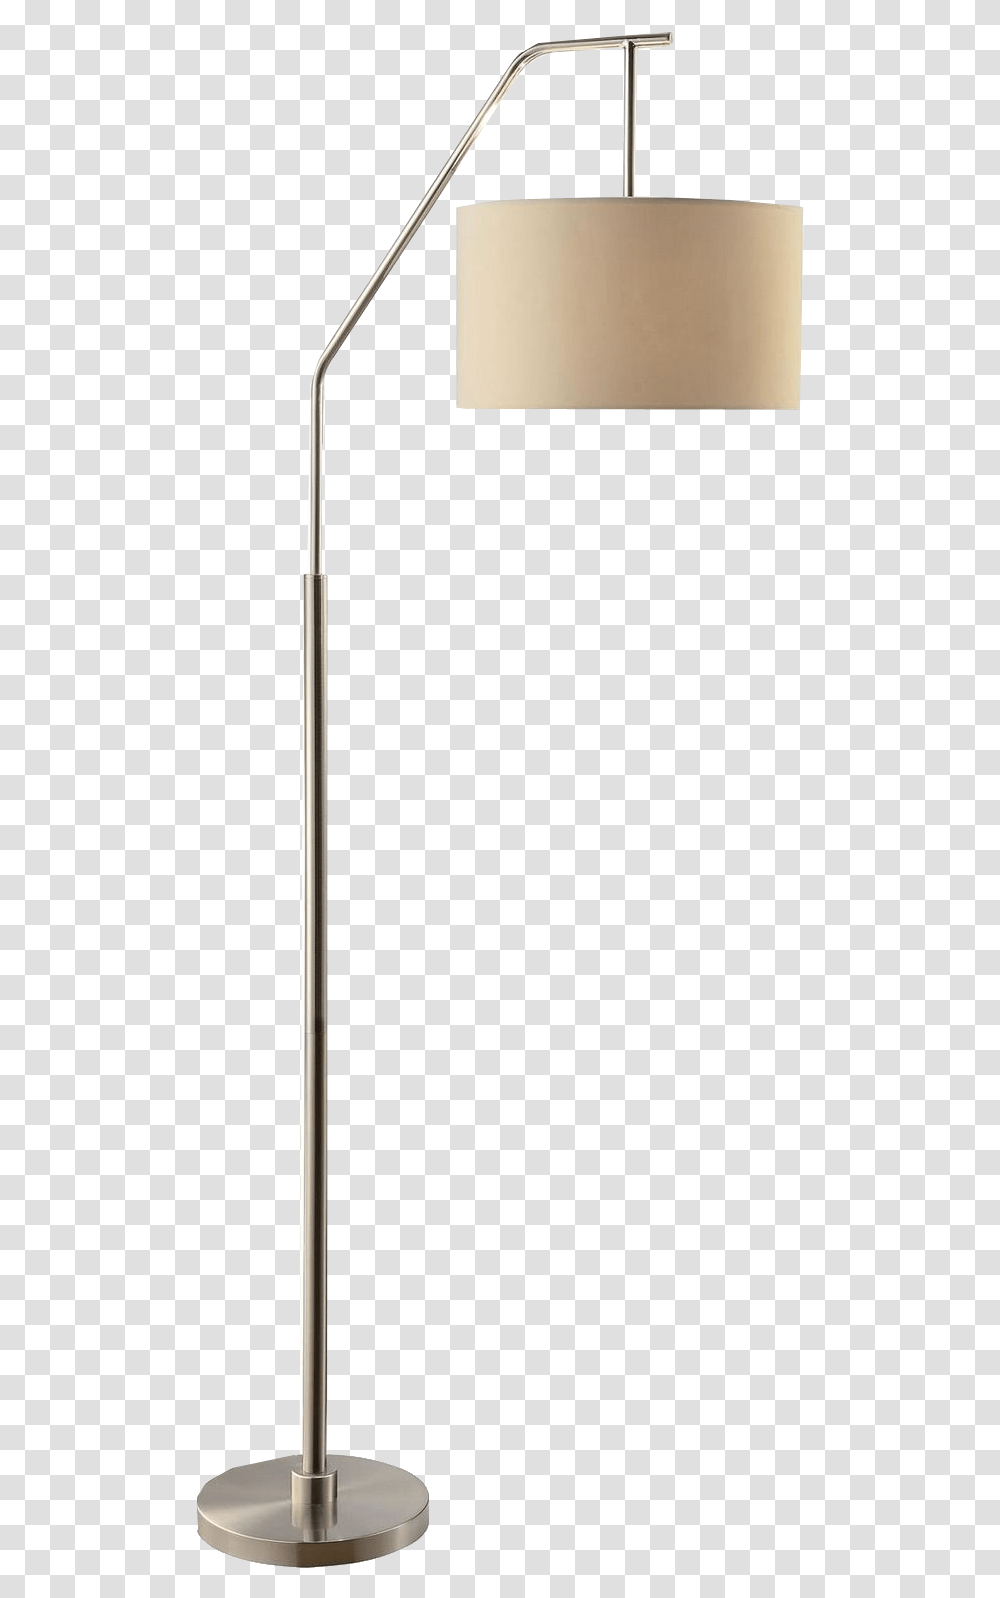 Lampshade, Lighting, Lamp Post Transparent Png